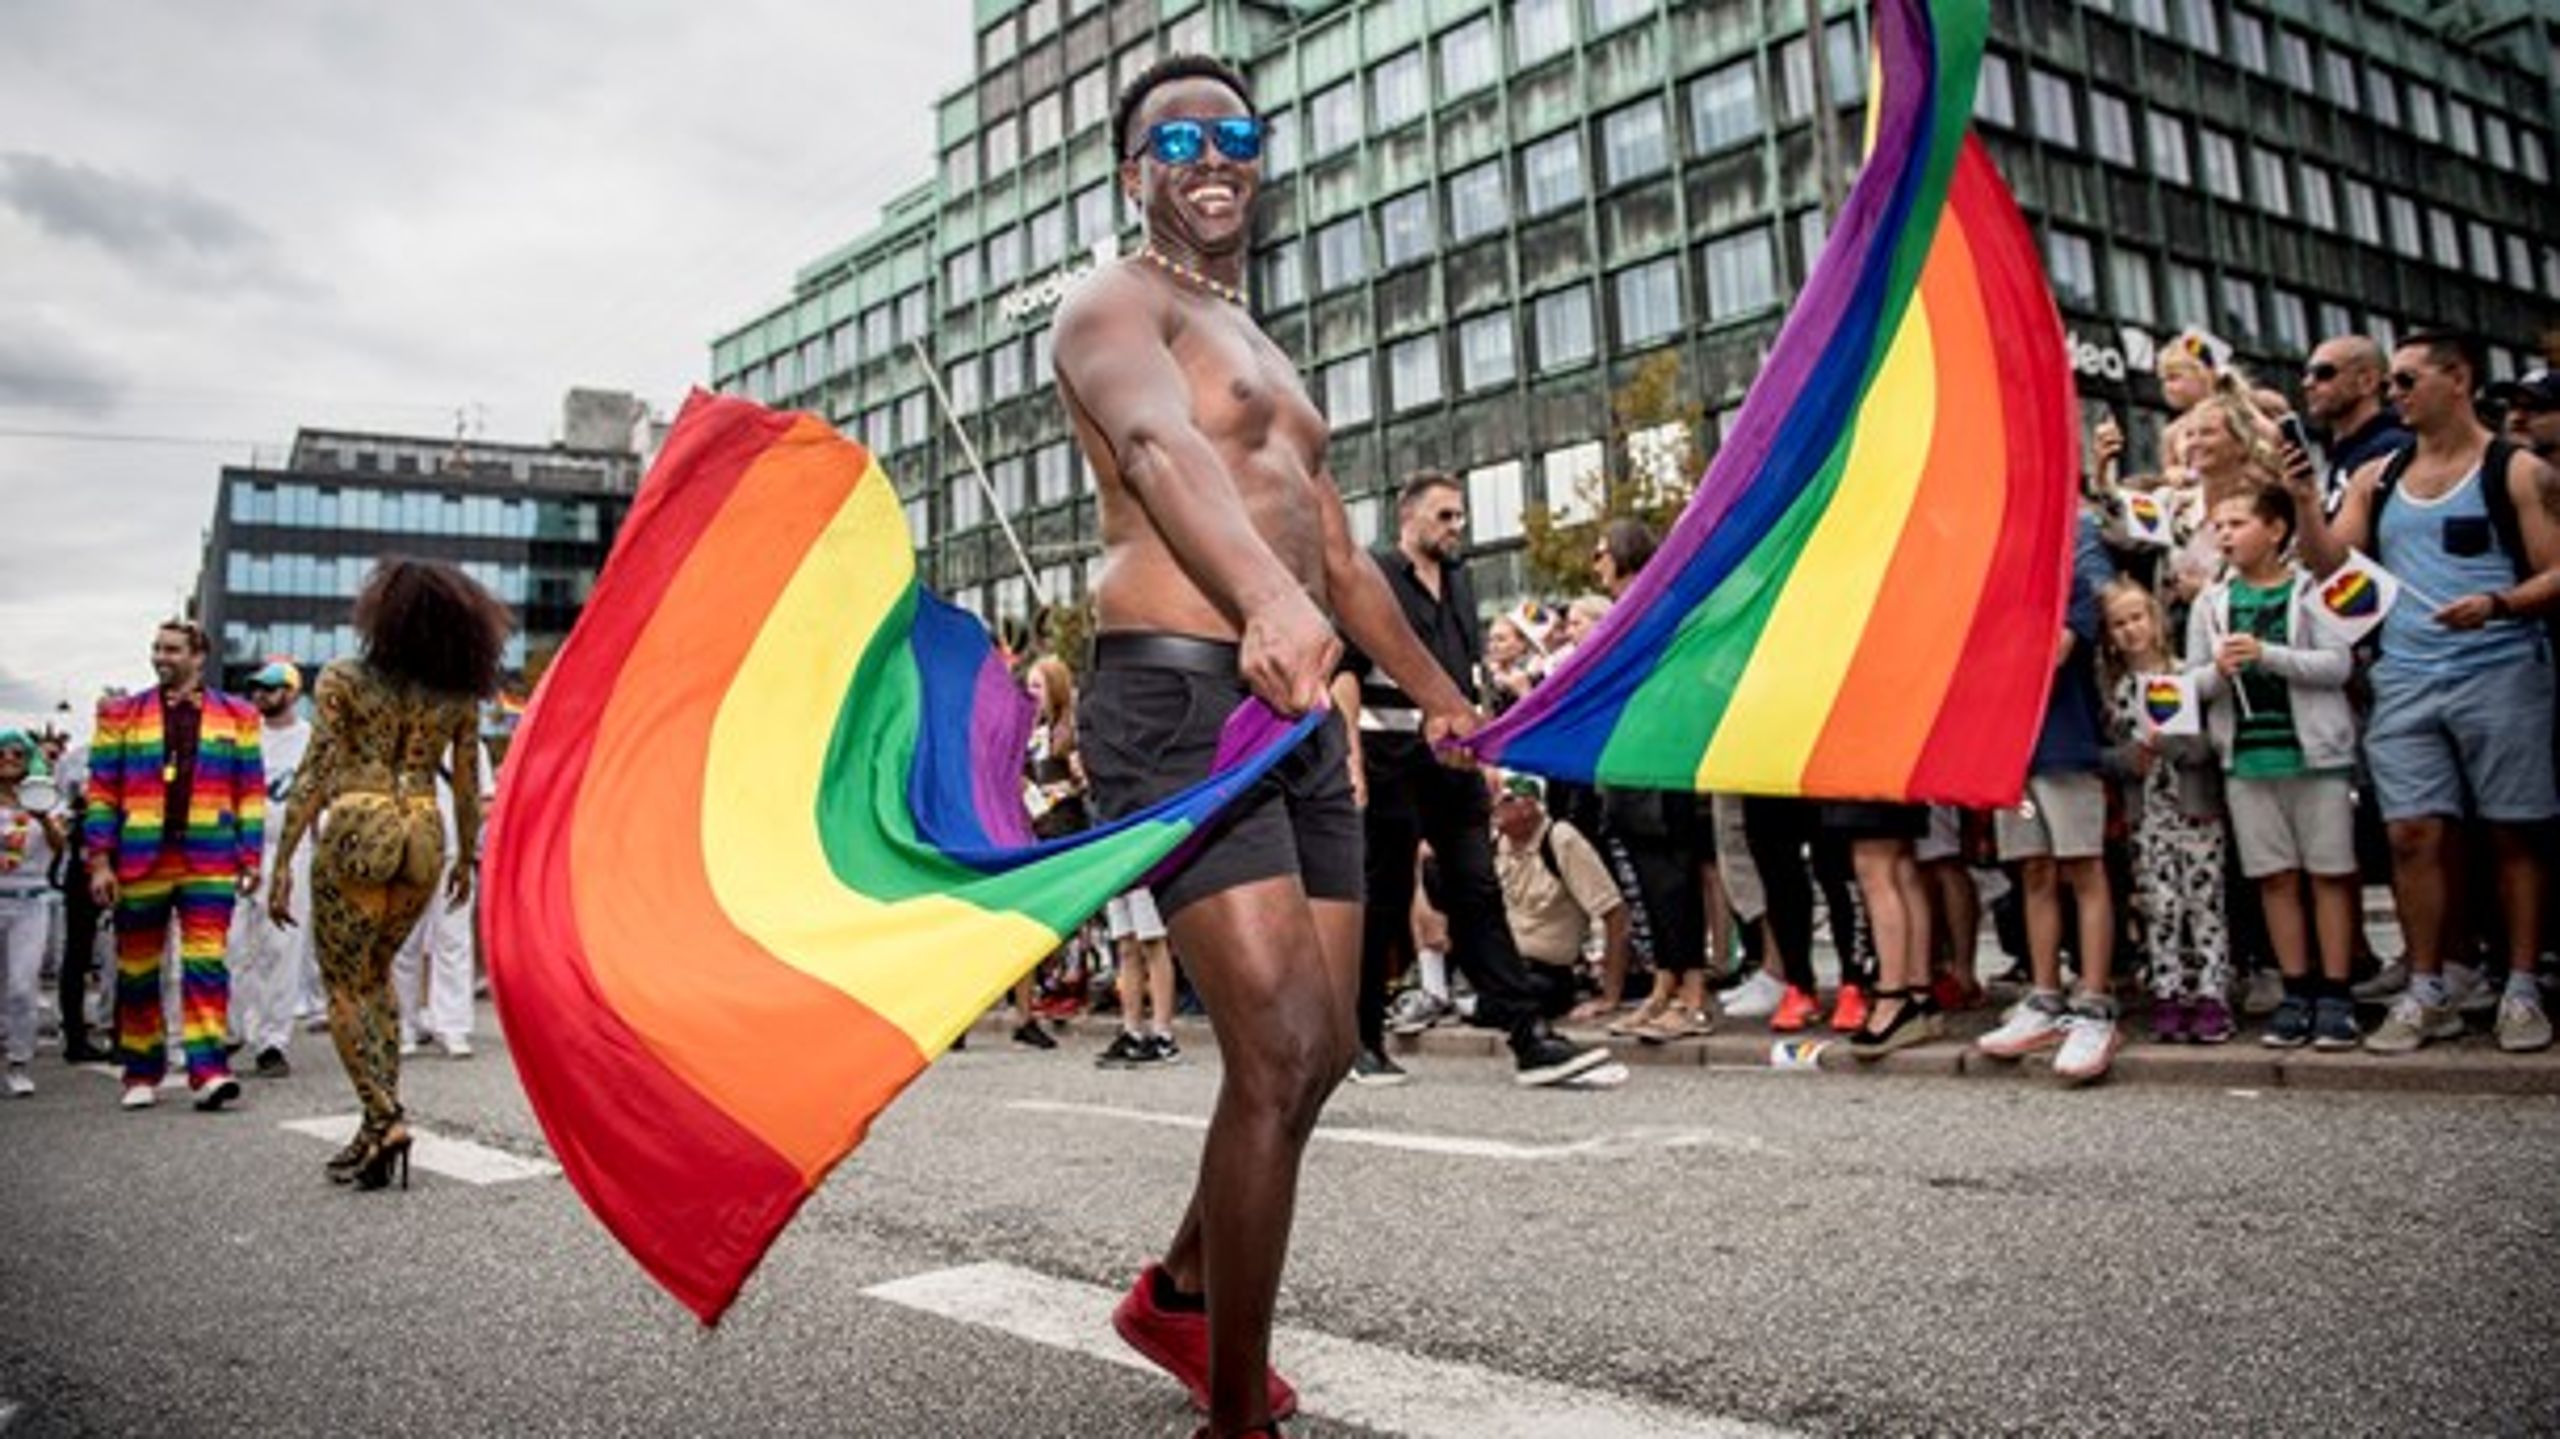 Priviligerede hvide, heteroseksuelle danskere, der langsomt tvinges til at dele små bidder af deres magt med minoritetsgrupperne, har intet at flippe ud over, skriver Tommy Petersen.